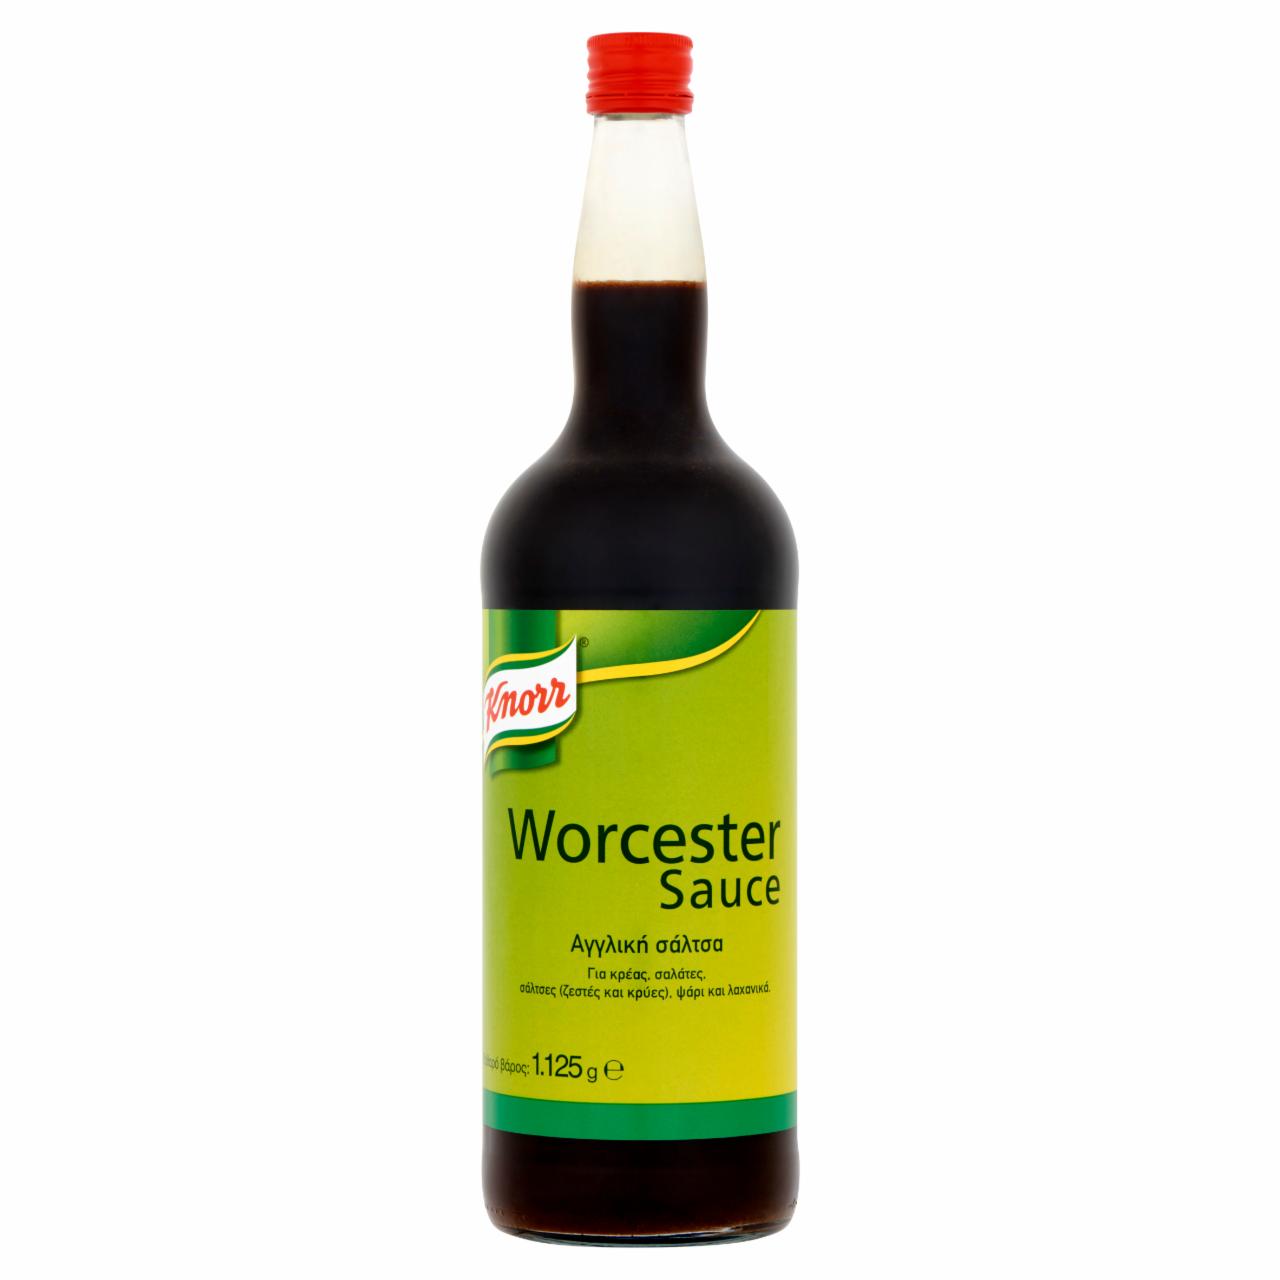 Képek - Knorr Worcester szósz 0,98 l